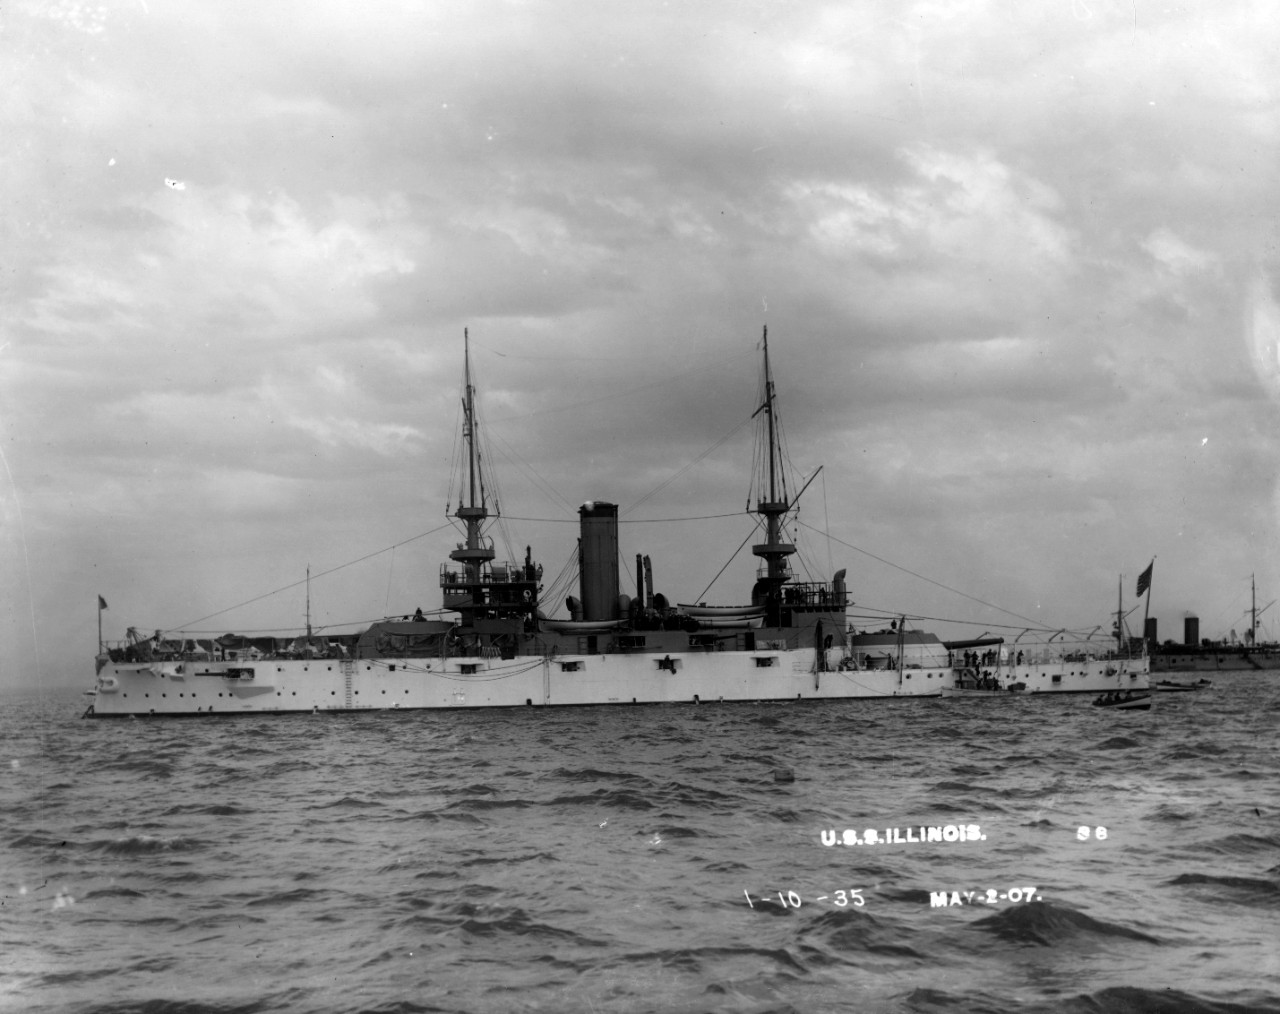 Photo #: 19-N-1-10-35  USS Illinois